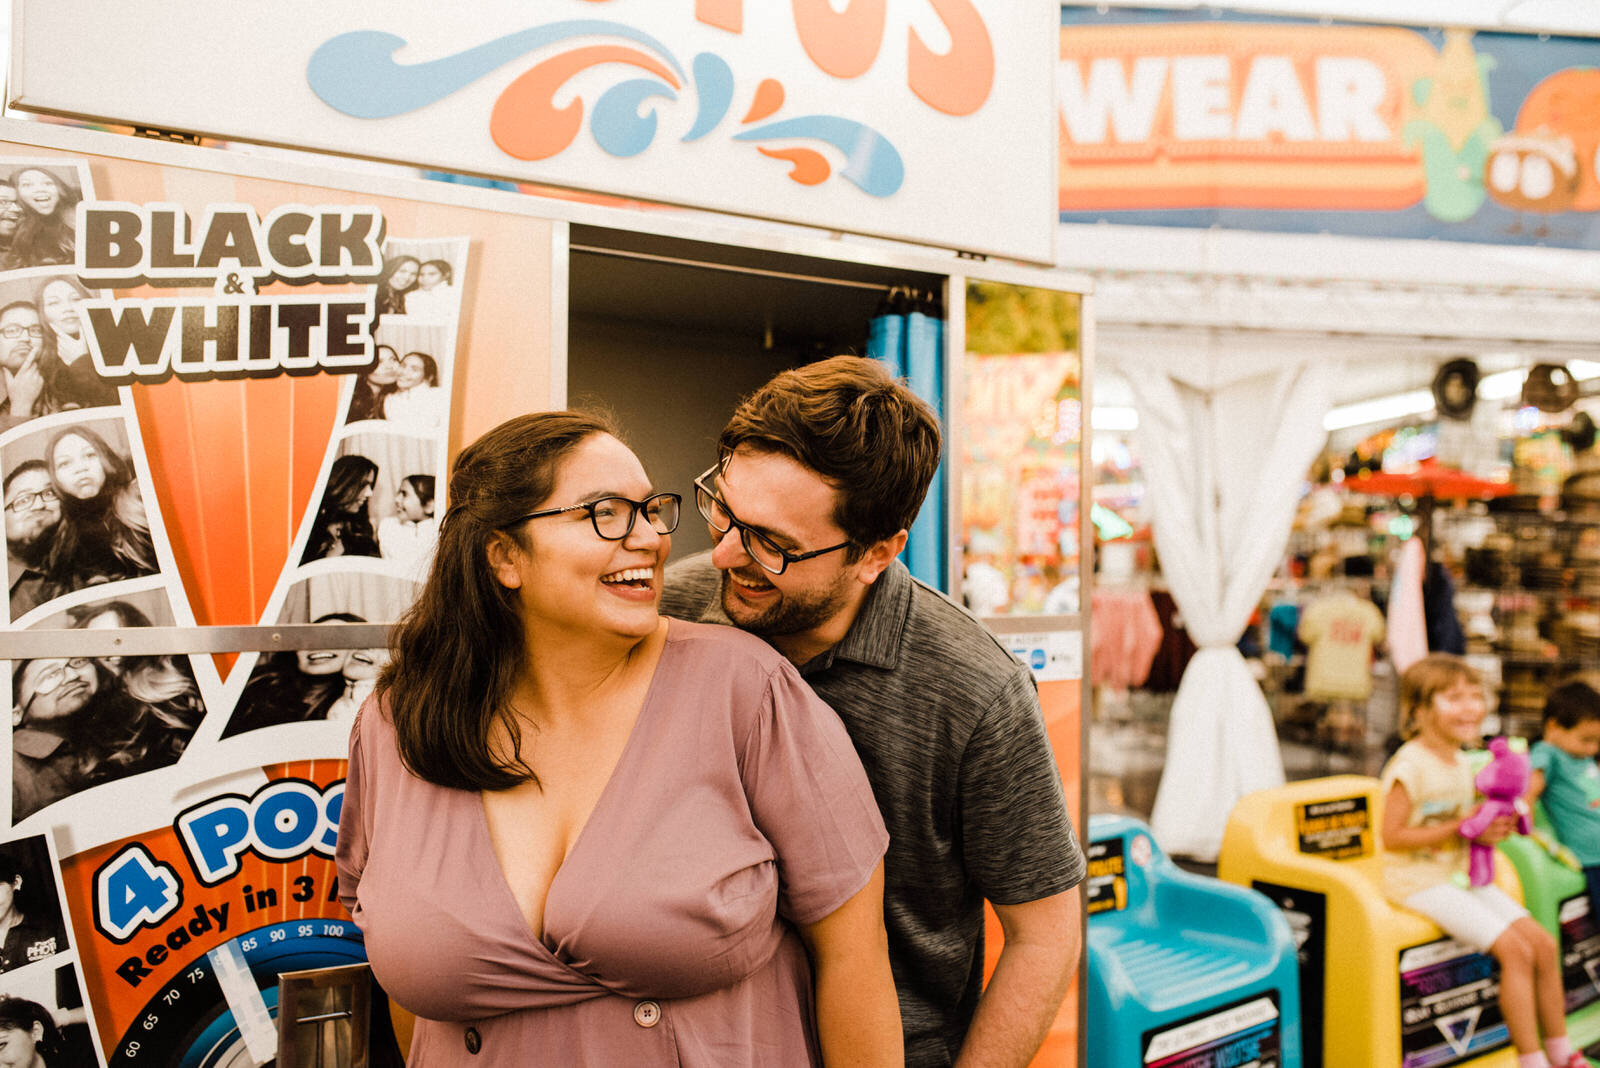 Fun romantic engagement photos at Orange County Fair in Costa Mesa Ca